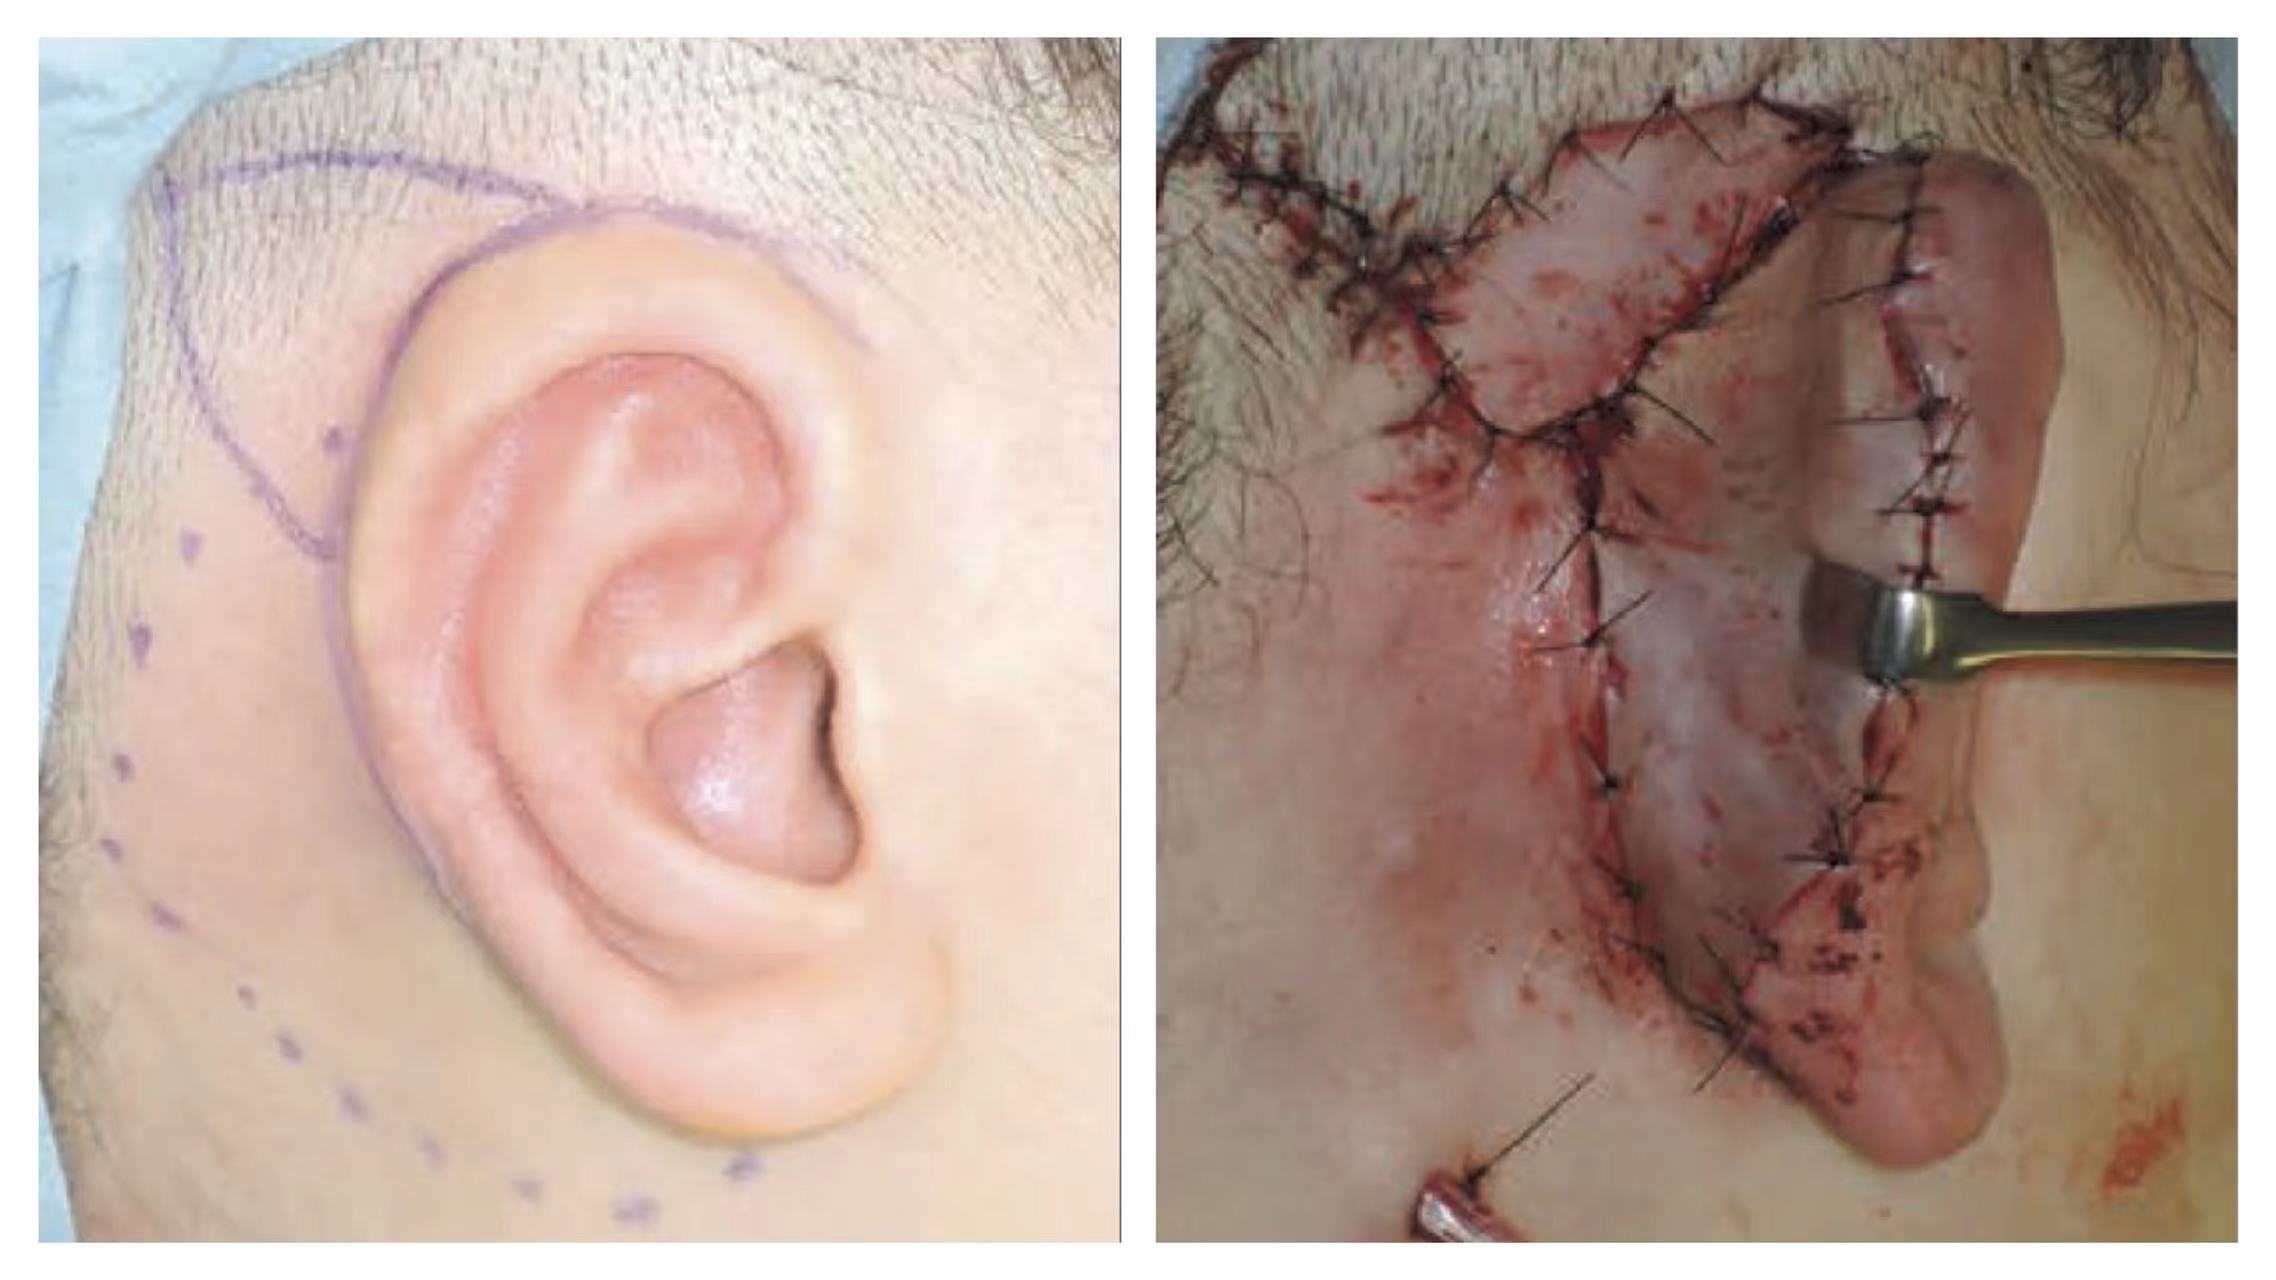 耳朵骨桥手术后图片图片